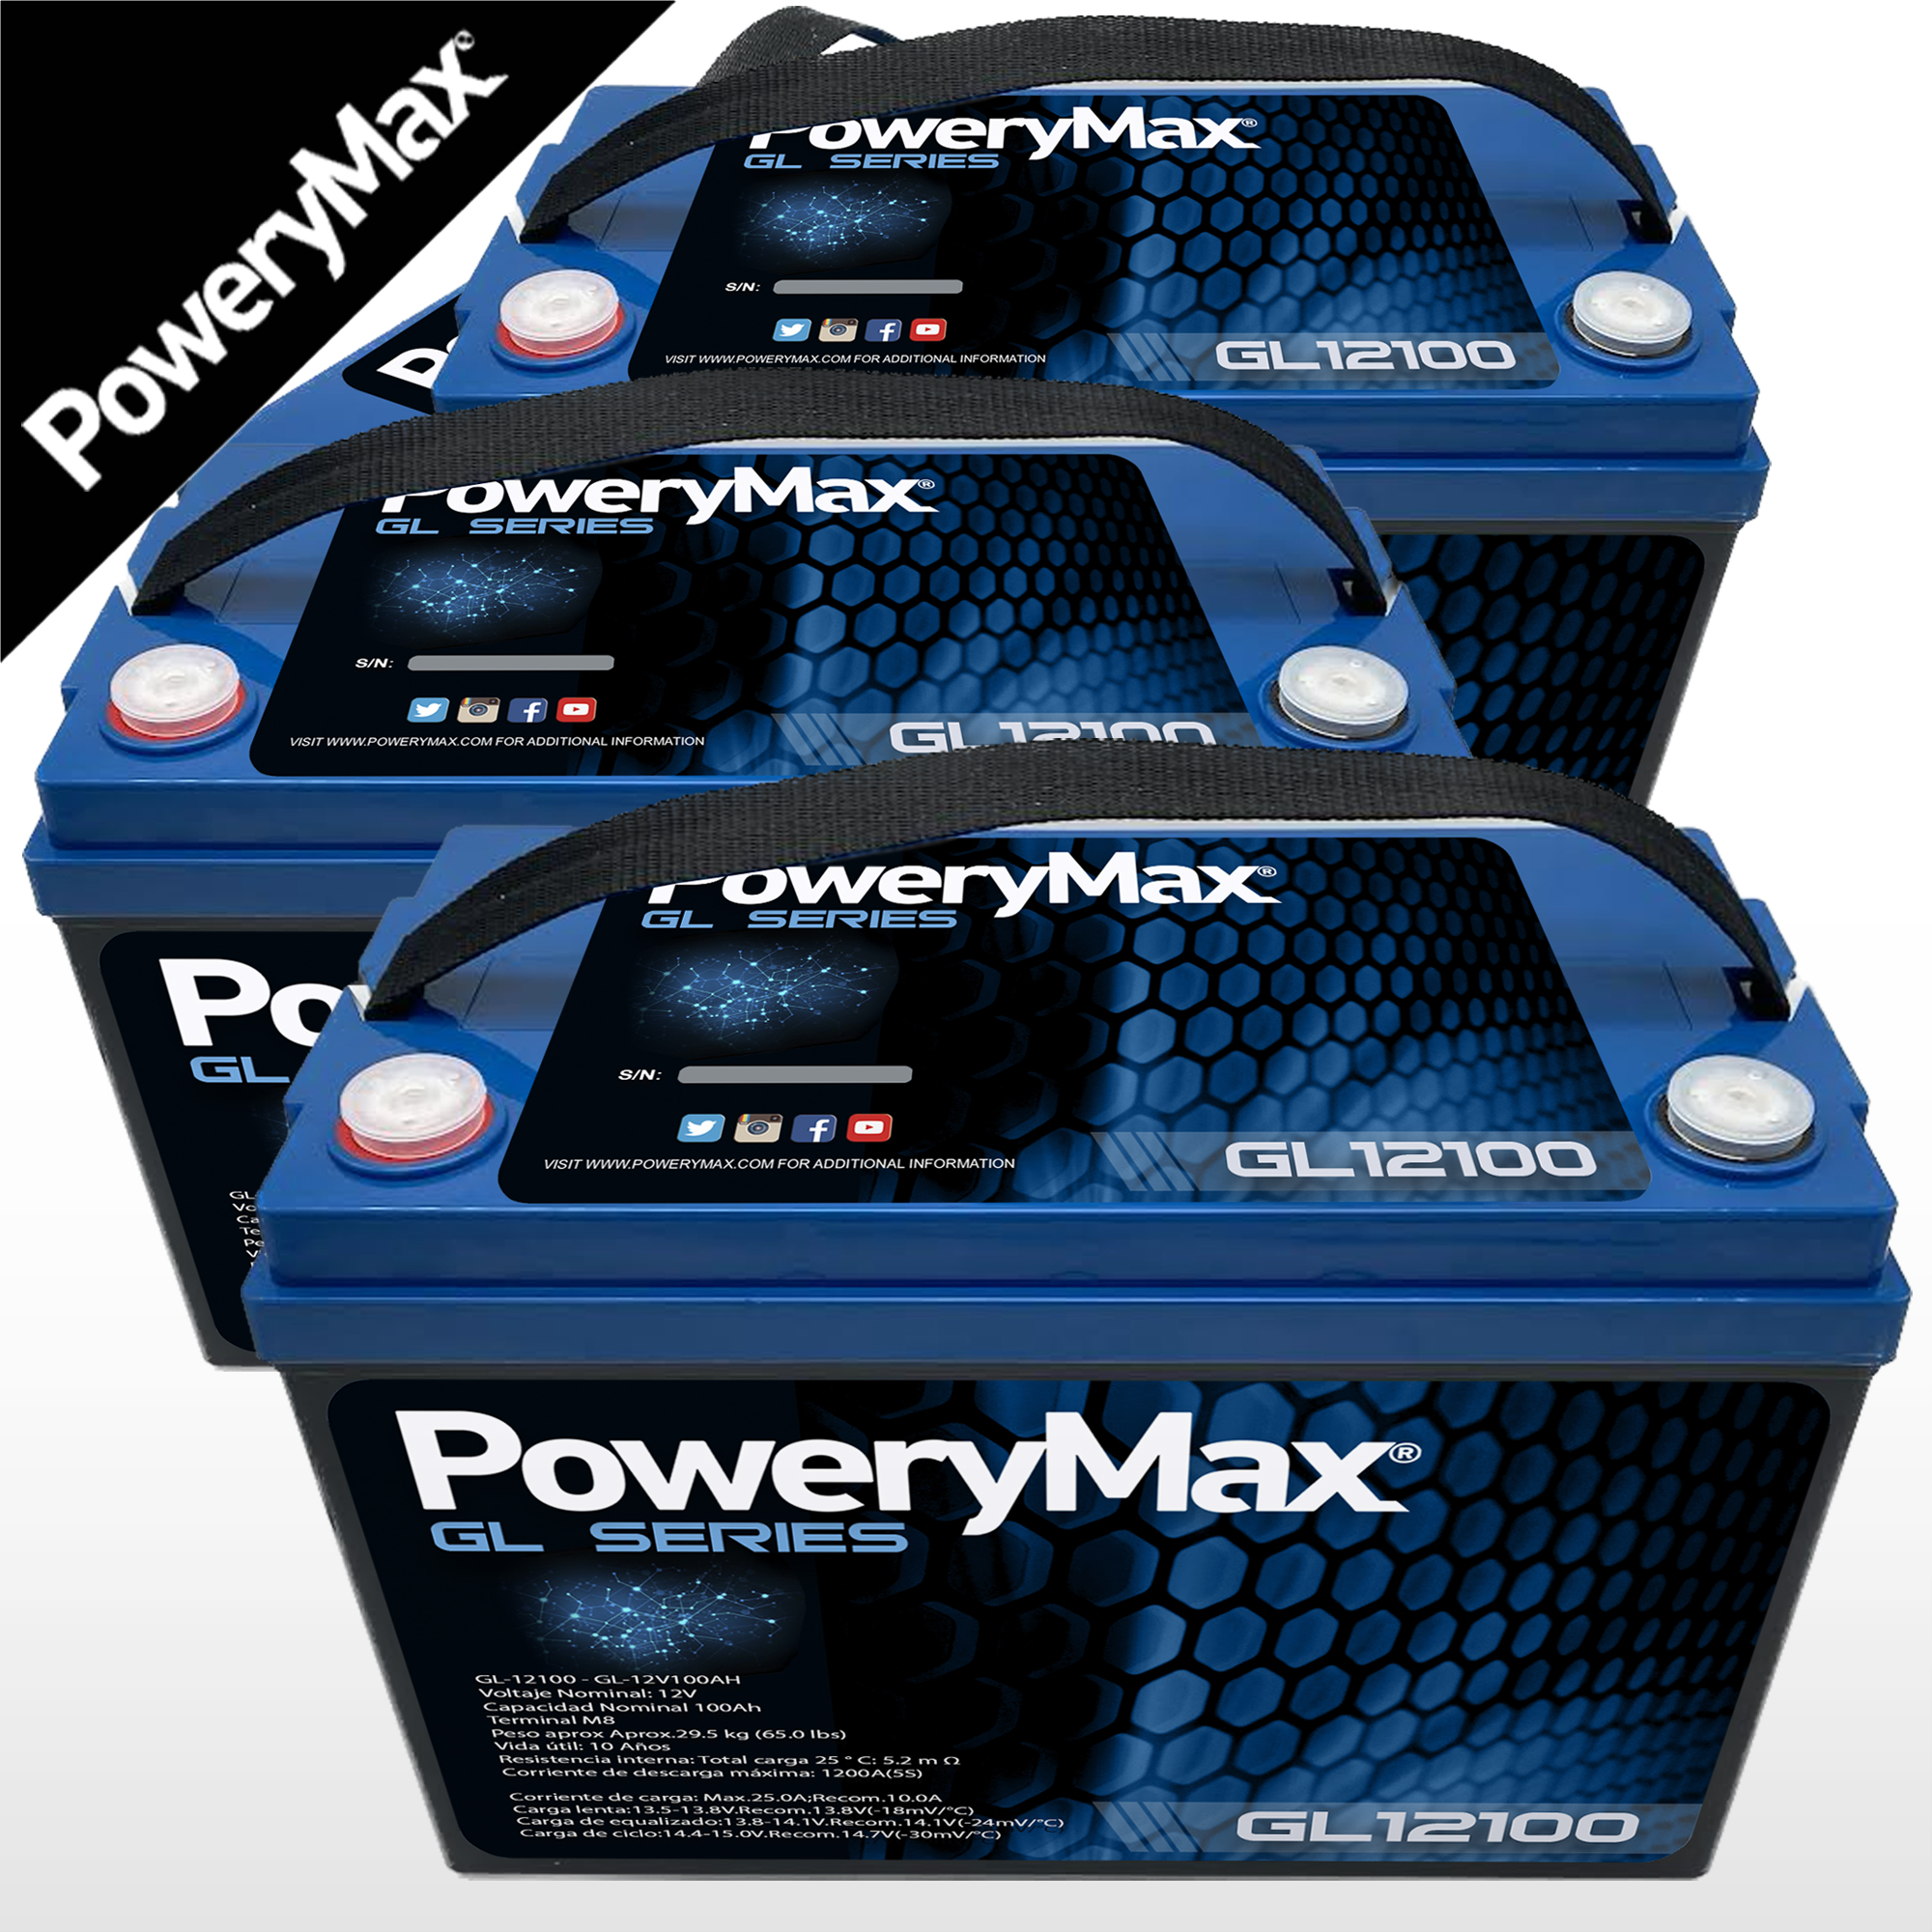 PoweryMax GL36100. Bateria de Gel. ONNautic